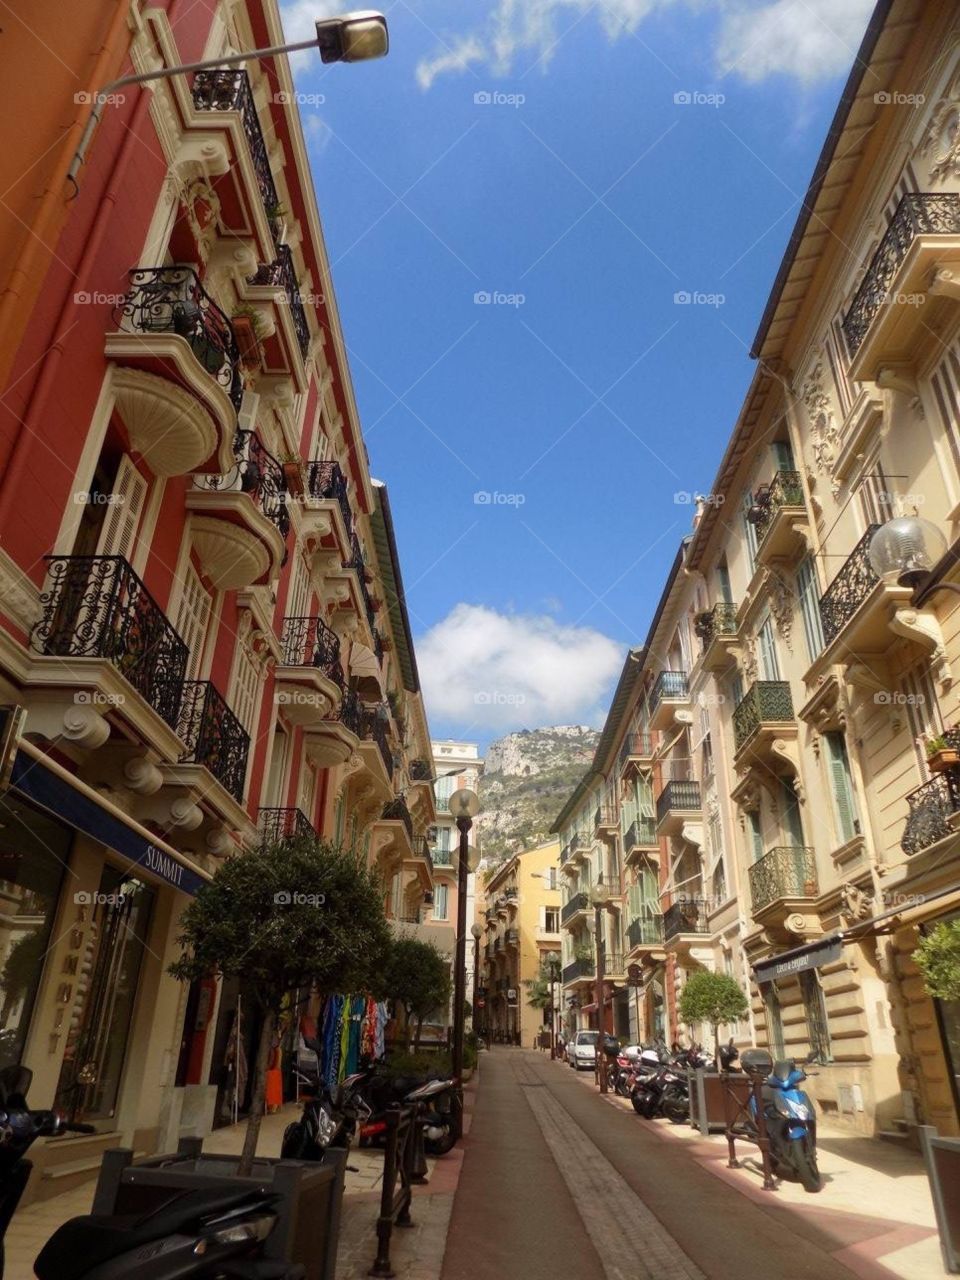 Walking, enjoying holidays)) Monaco, France